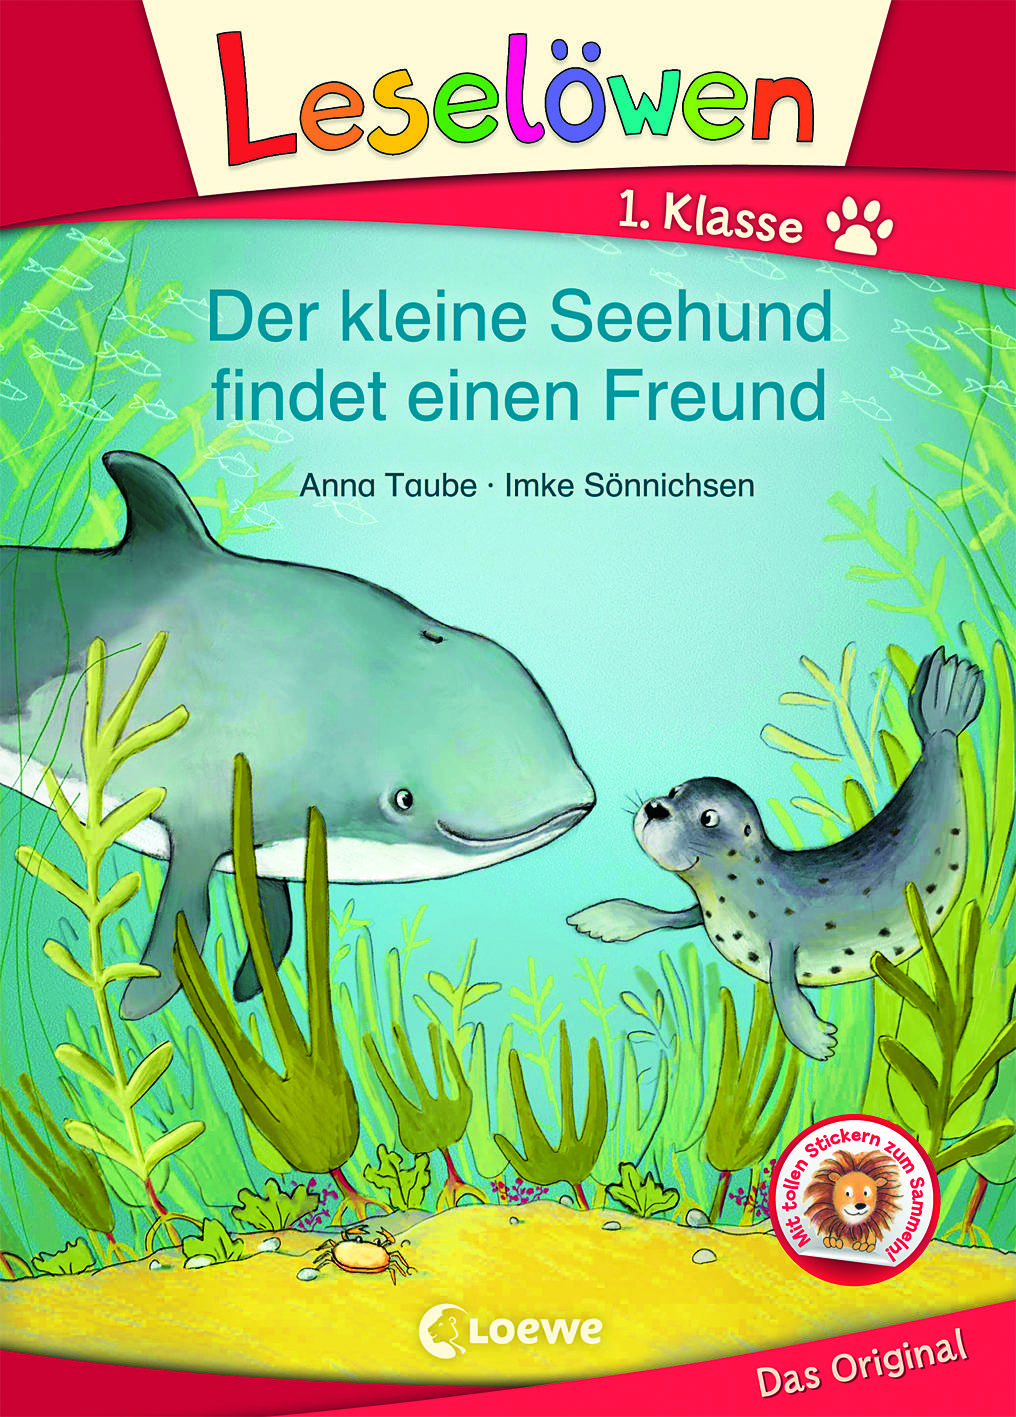 Der kleine Seehund findet einen Freund ist ein besonderes Buch über Freundschaft zwischen einem Seehund und einem Wal.